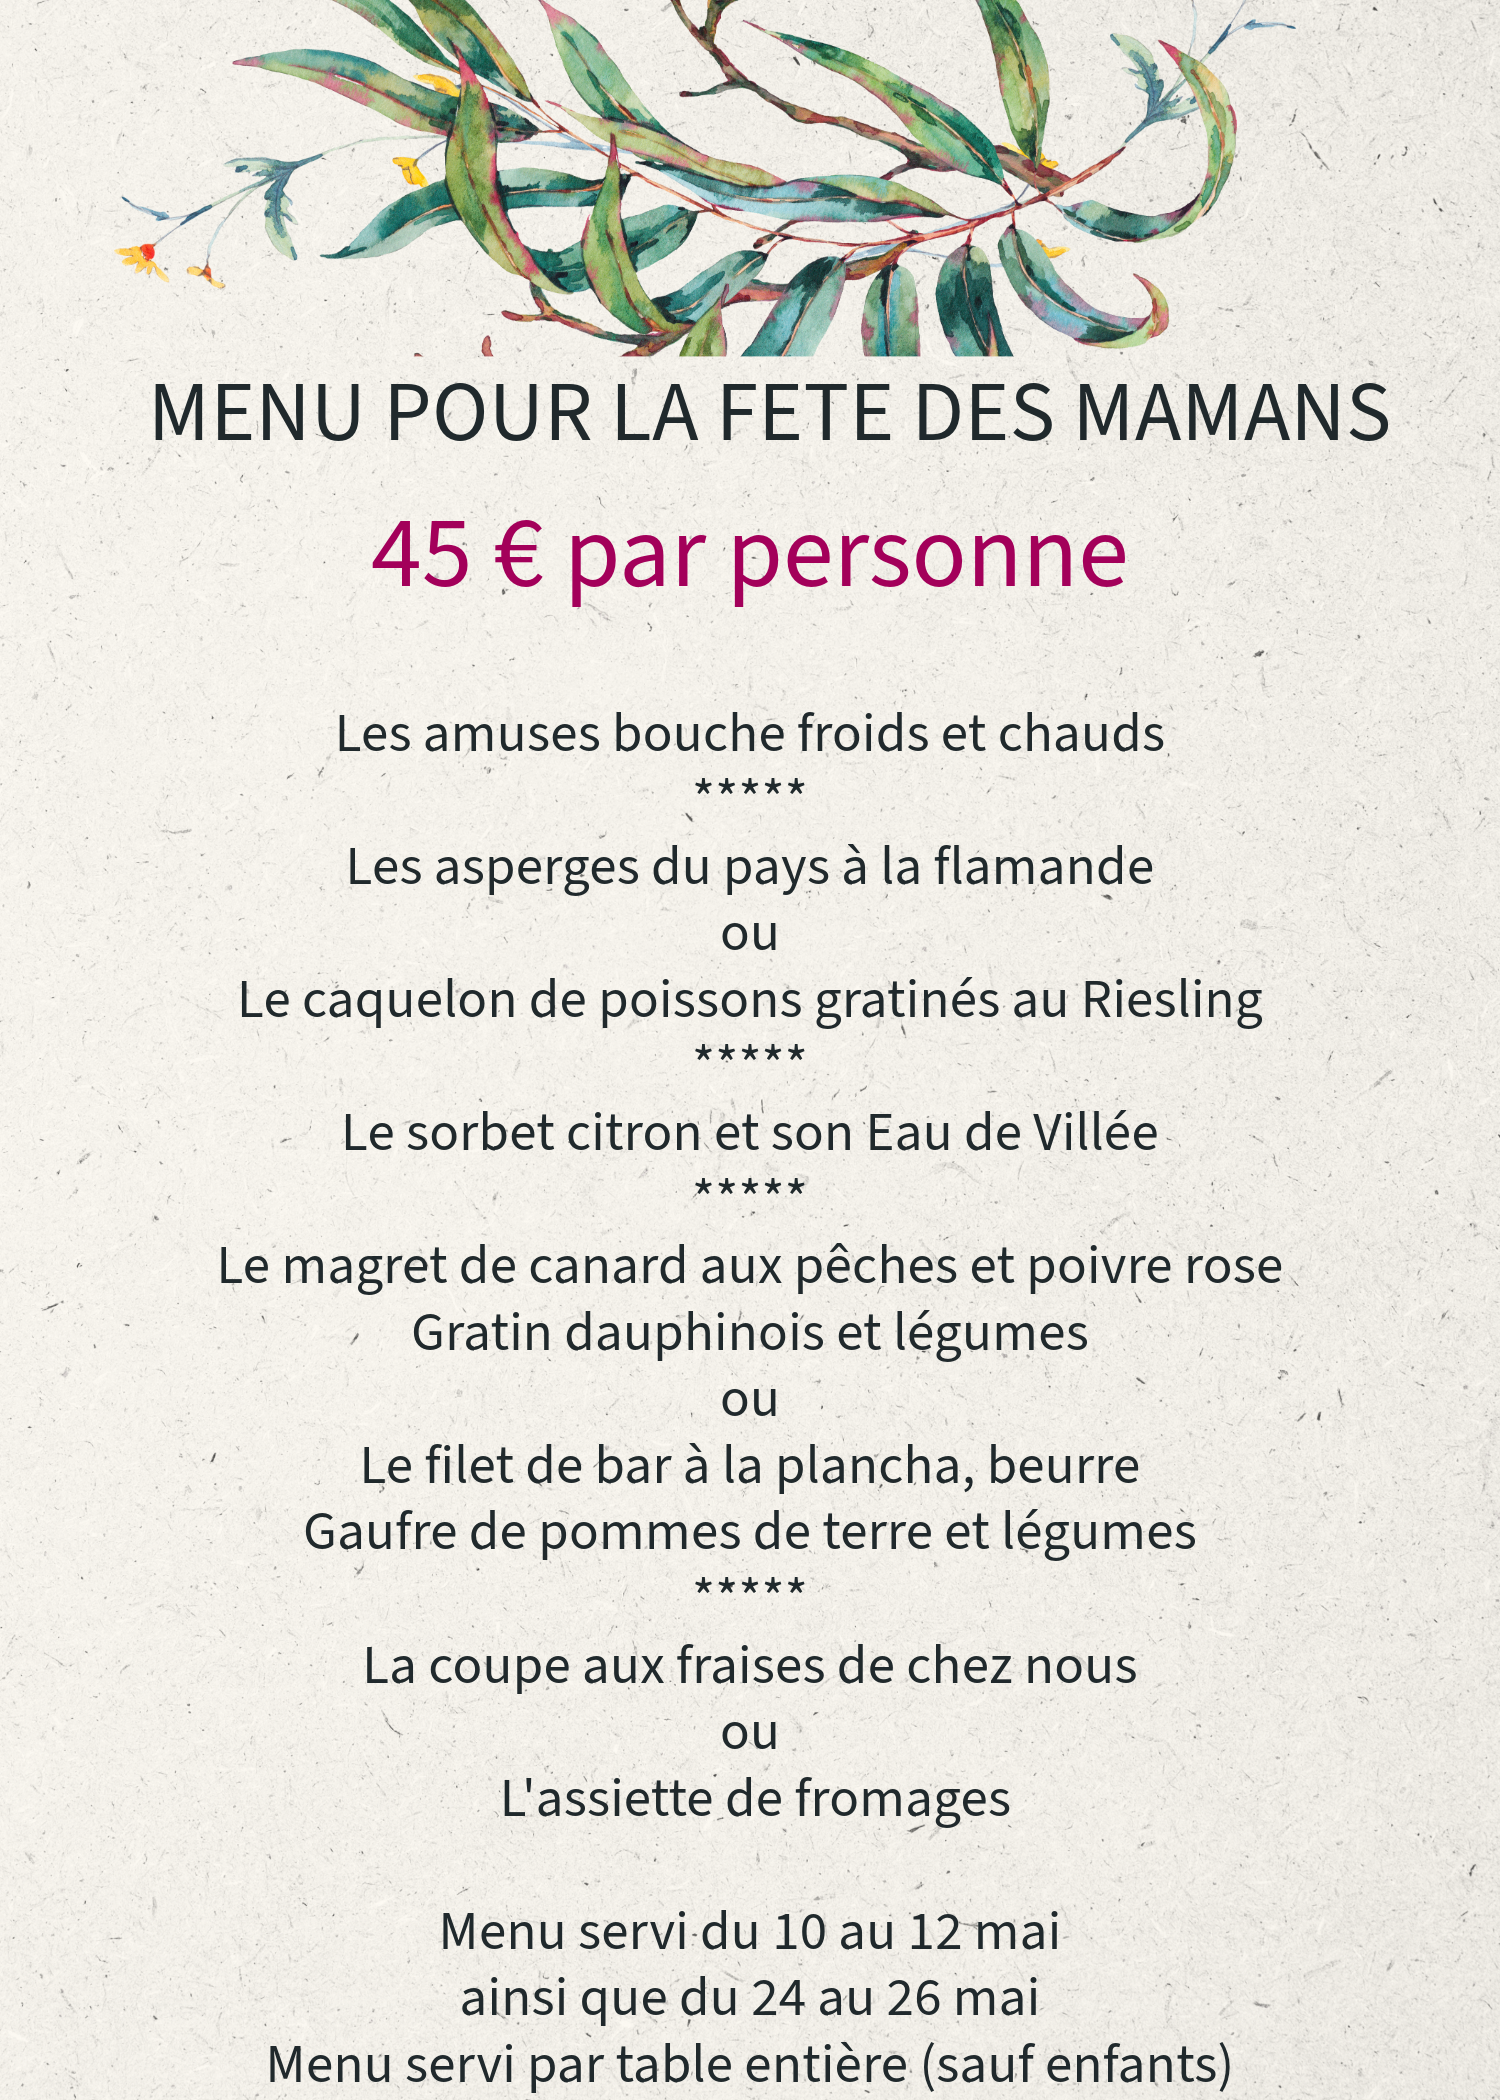 Menu fête des mamans, gastronomie française.